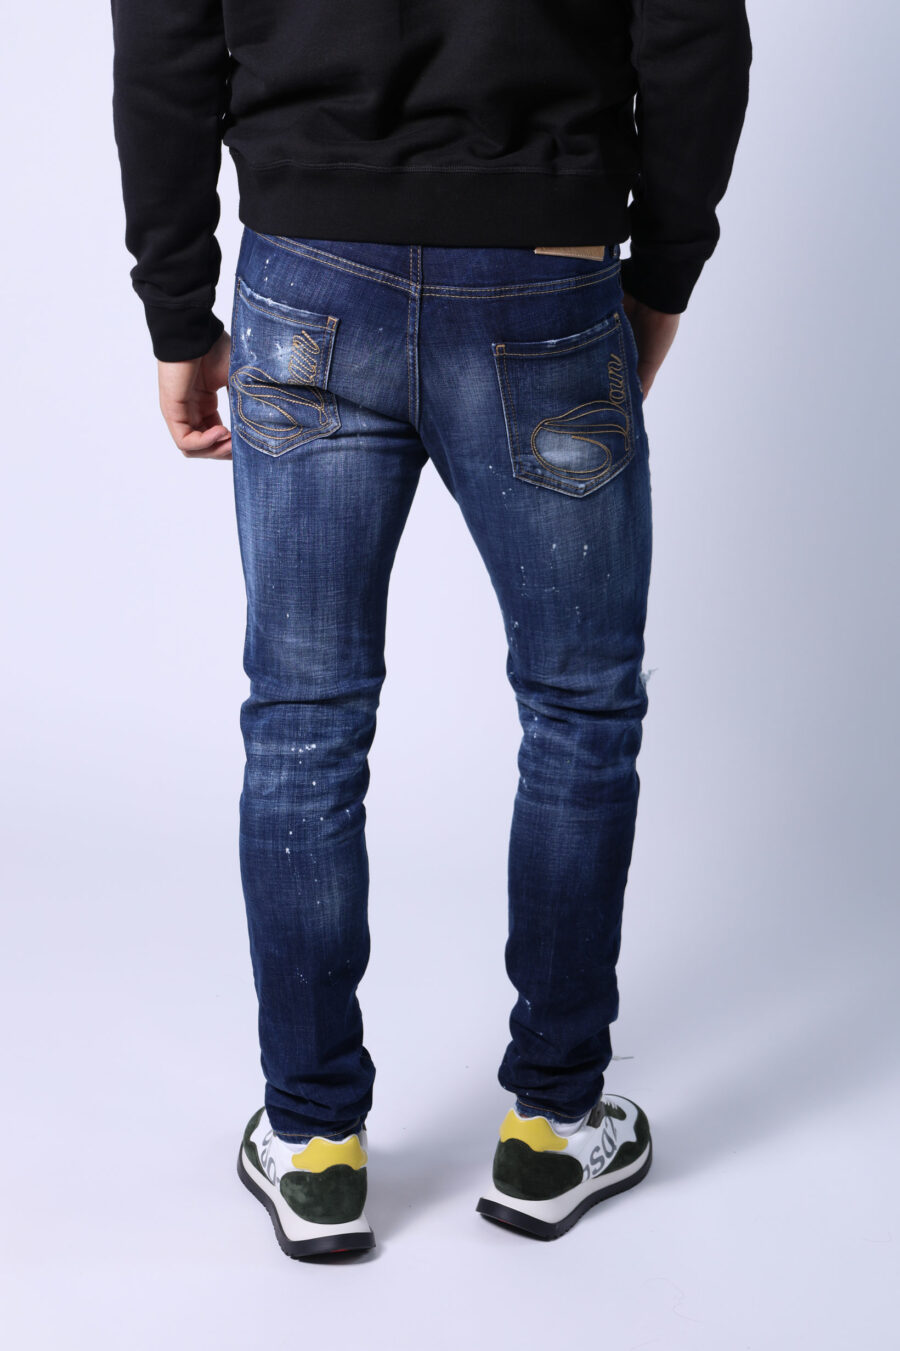 Blaue "cool guy jean" Jeans mit Farbe und ausgefranst - Ohne Titel Katalog 05414